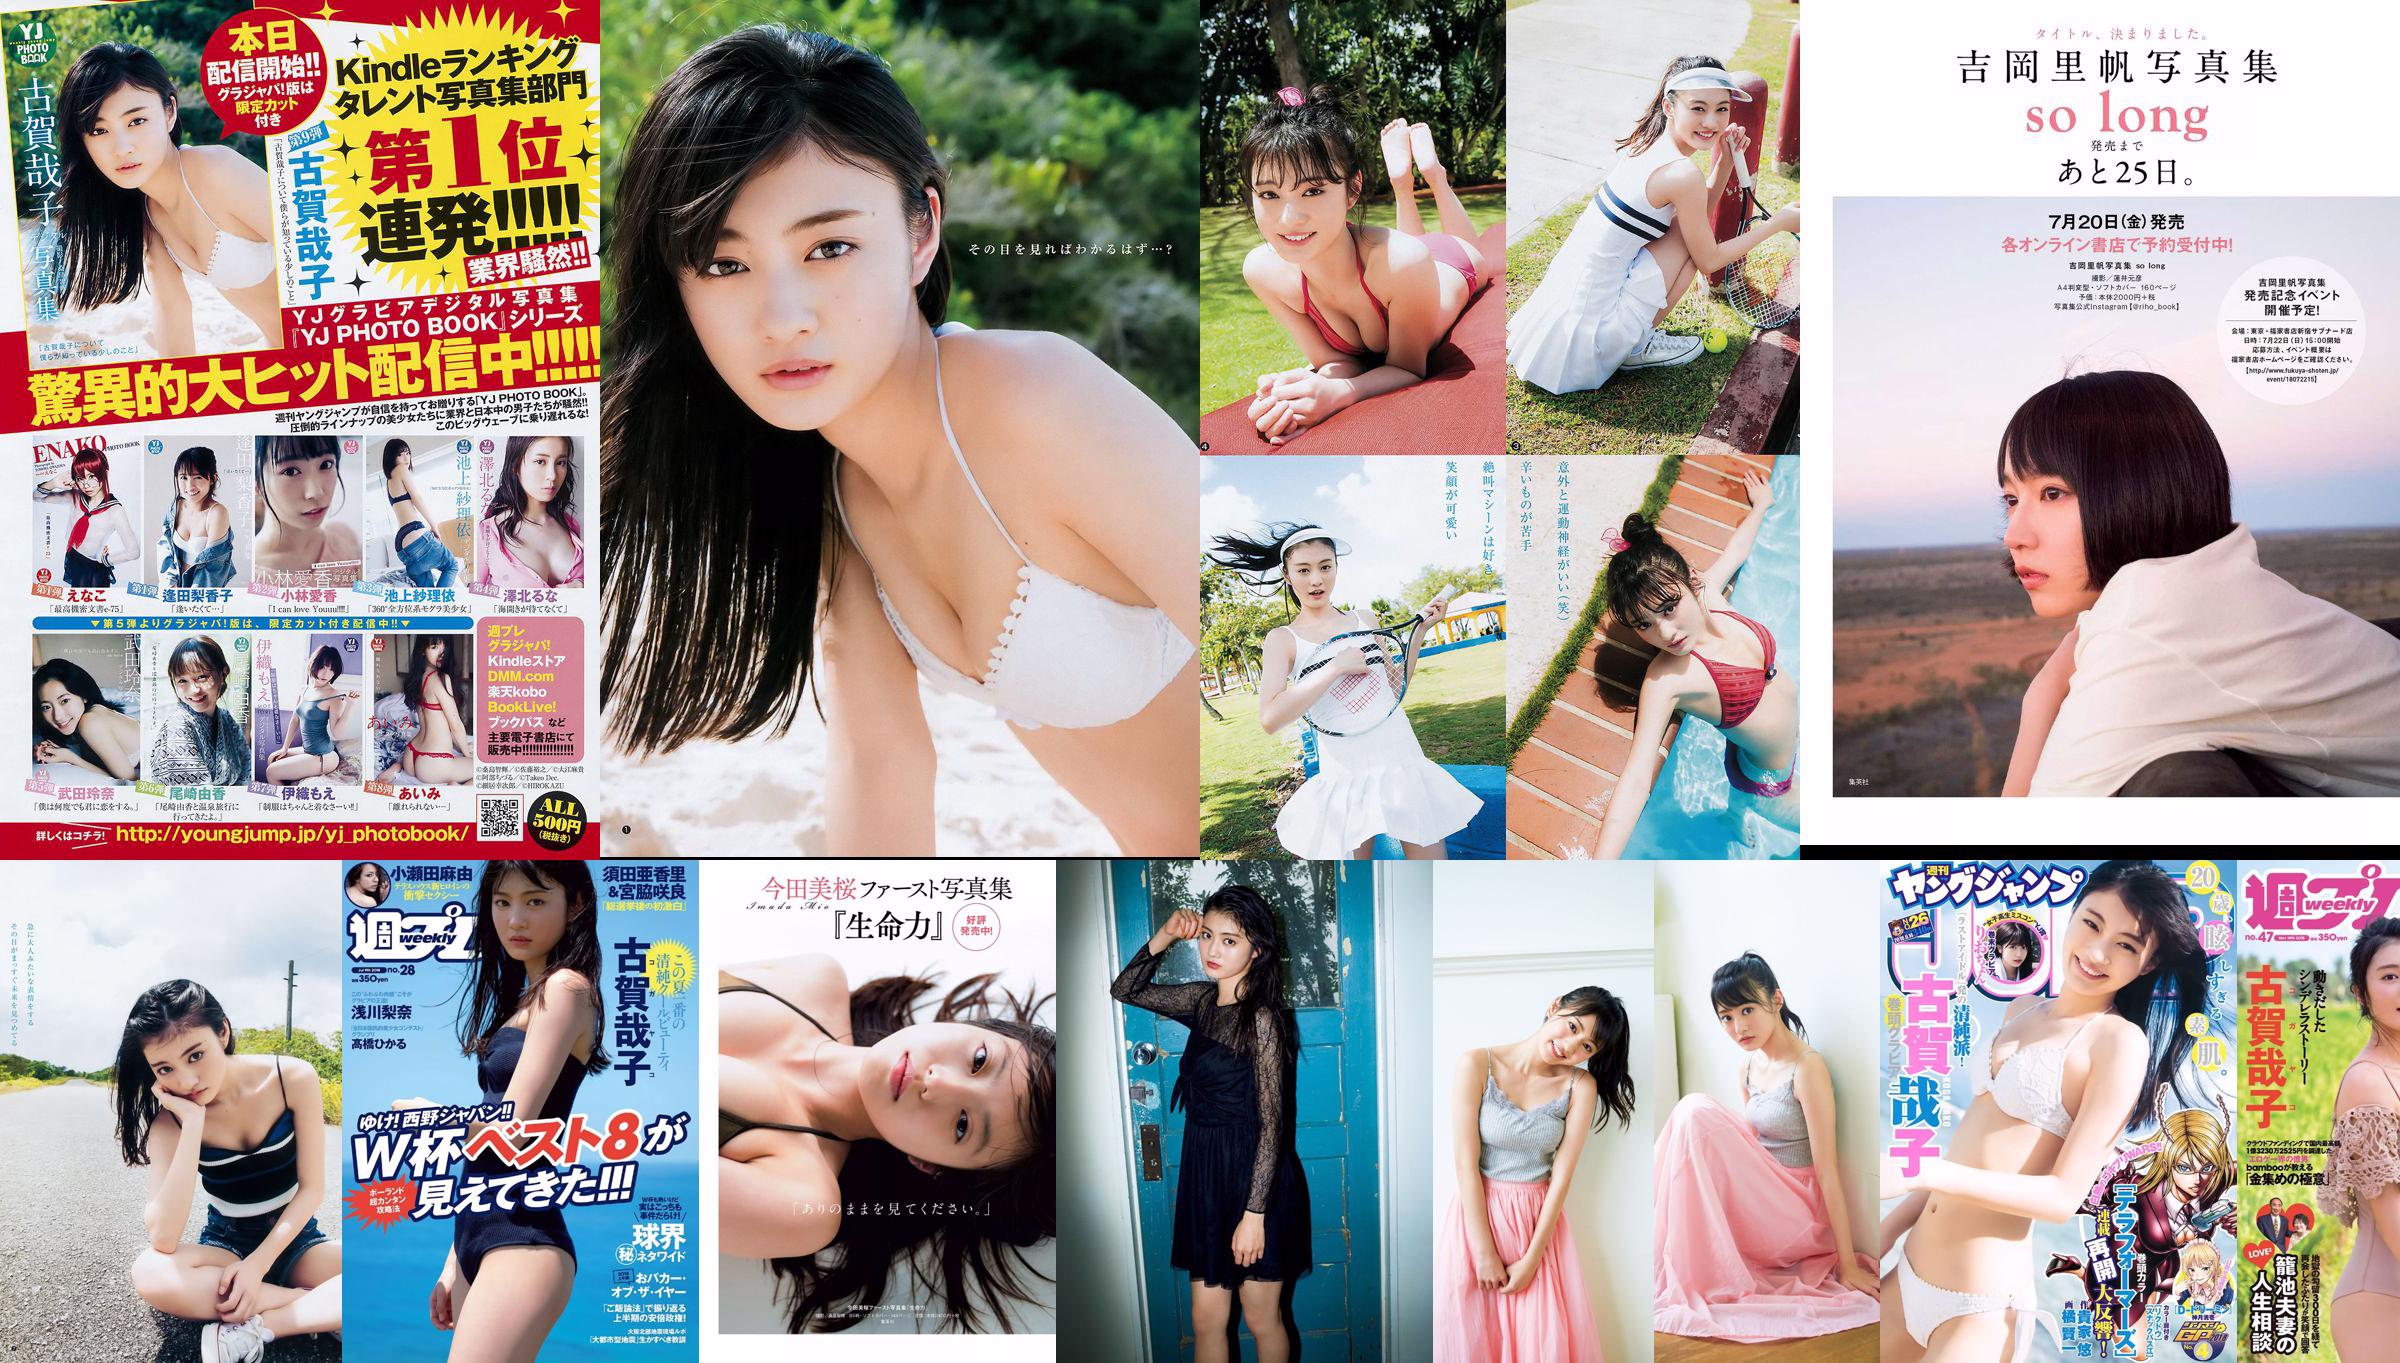 古賀哉子 りおちょん [Weekly Young Jump] 2018年No.26 写真杂志 No.649214 第5頁